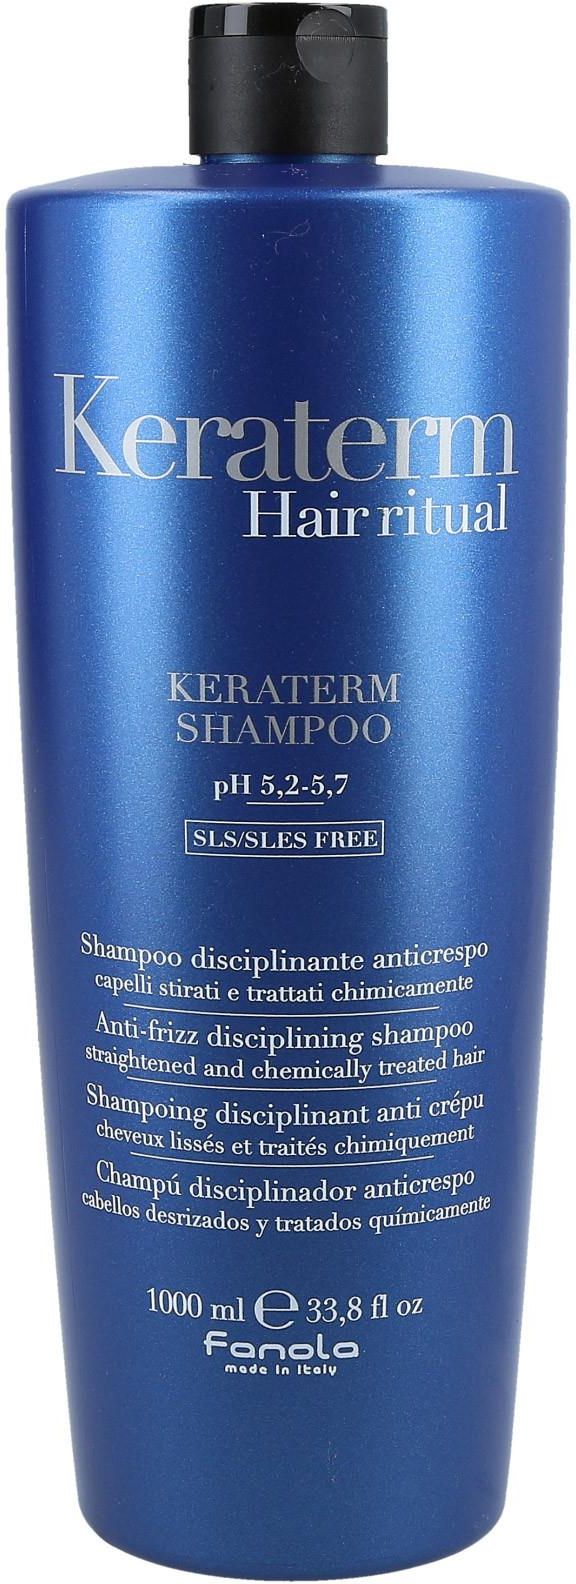 szampon do włosów keraterm przeciw puszeniu się włosów gdzie kupić